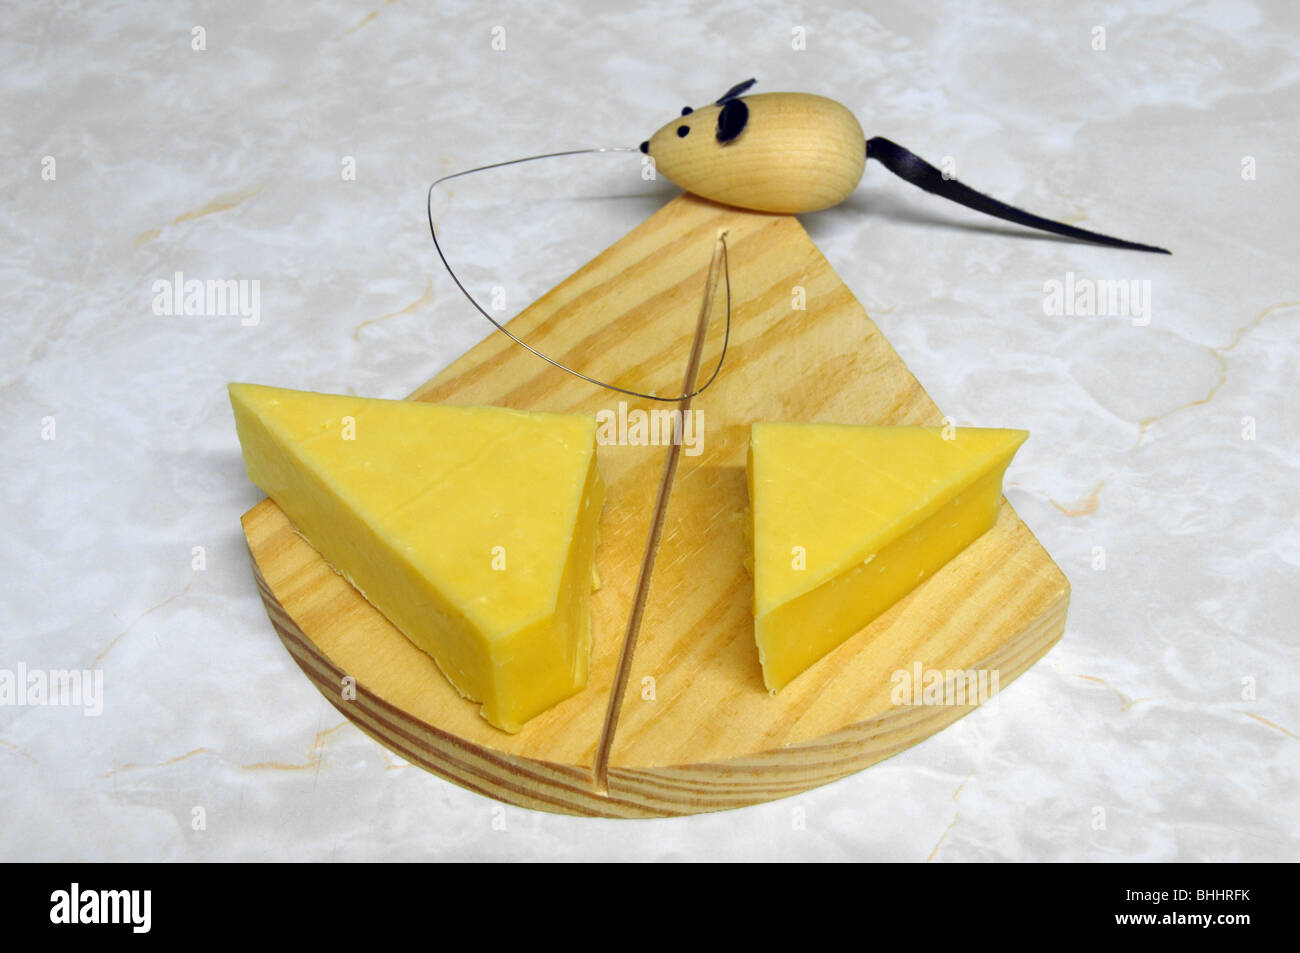 Cortador para queso Roquefort con alambre